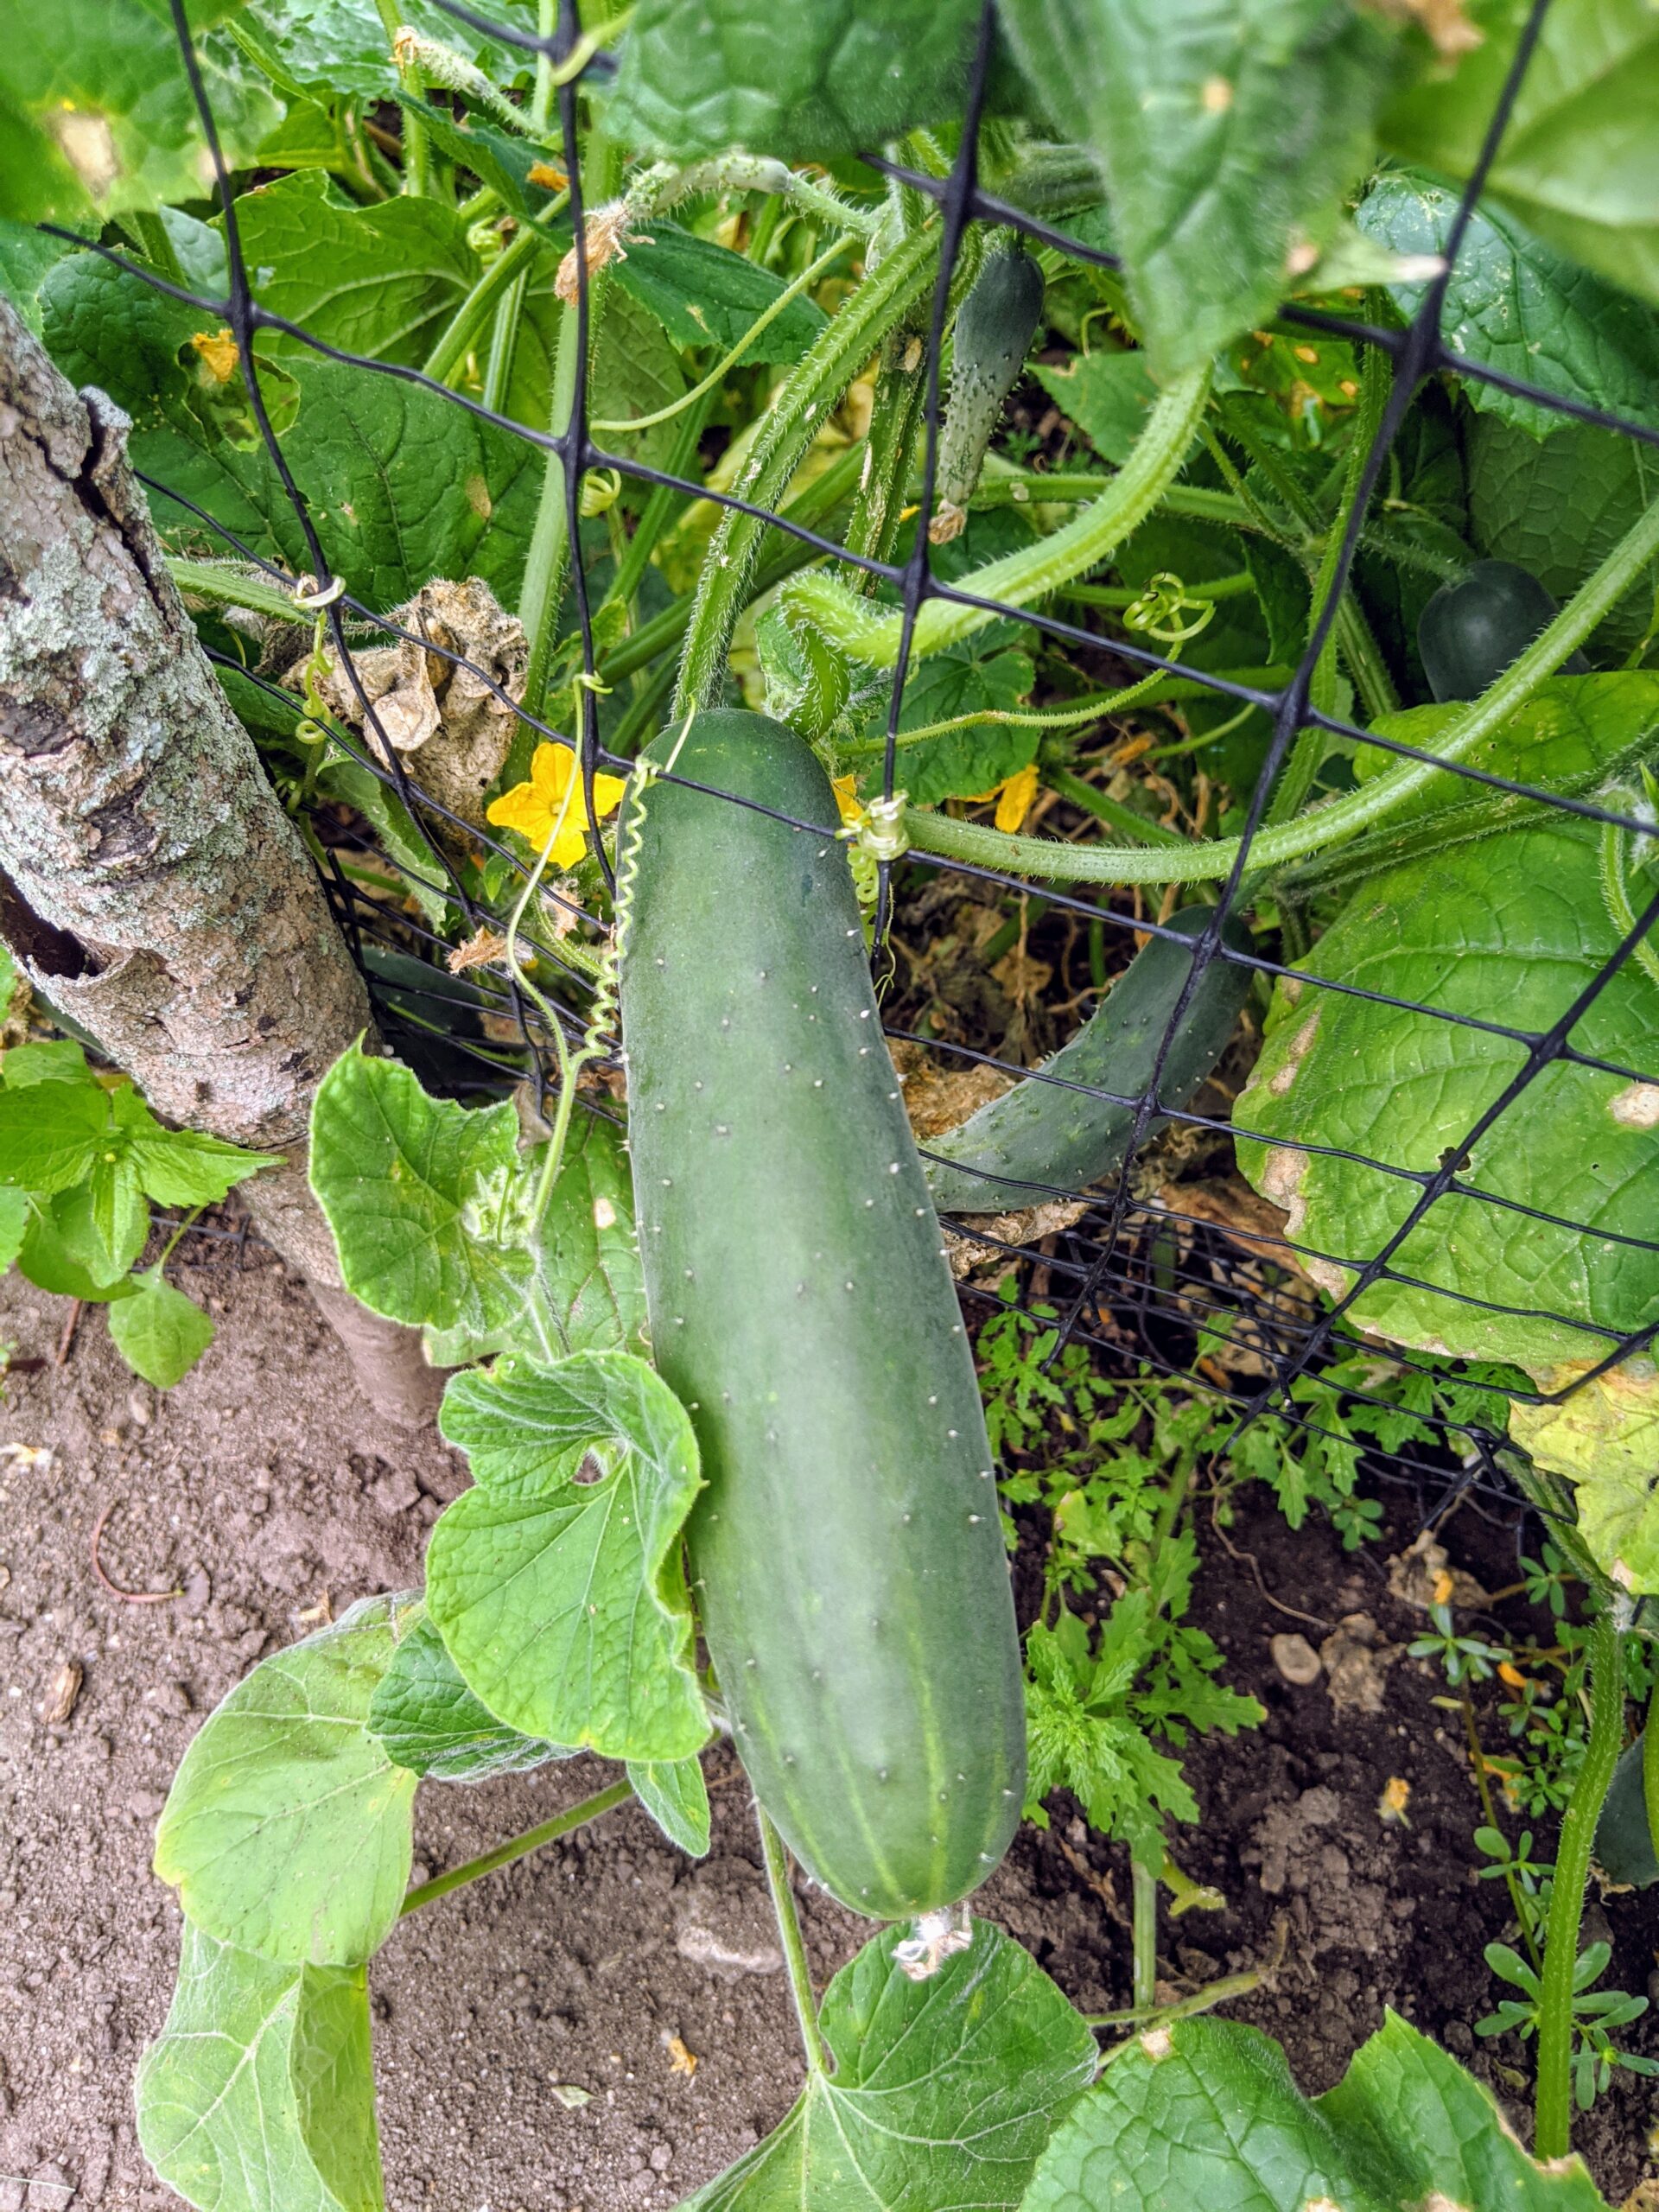 Picking Eggplants, Squash, Cucumbers and More - The Martha Stewart Blog